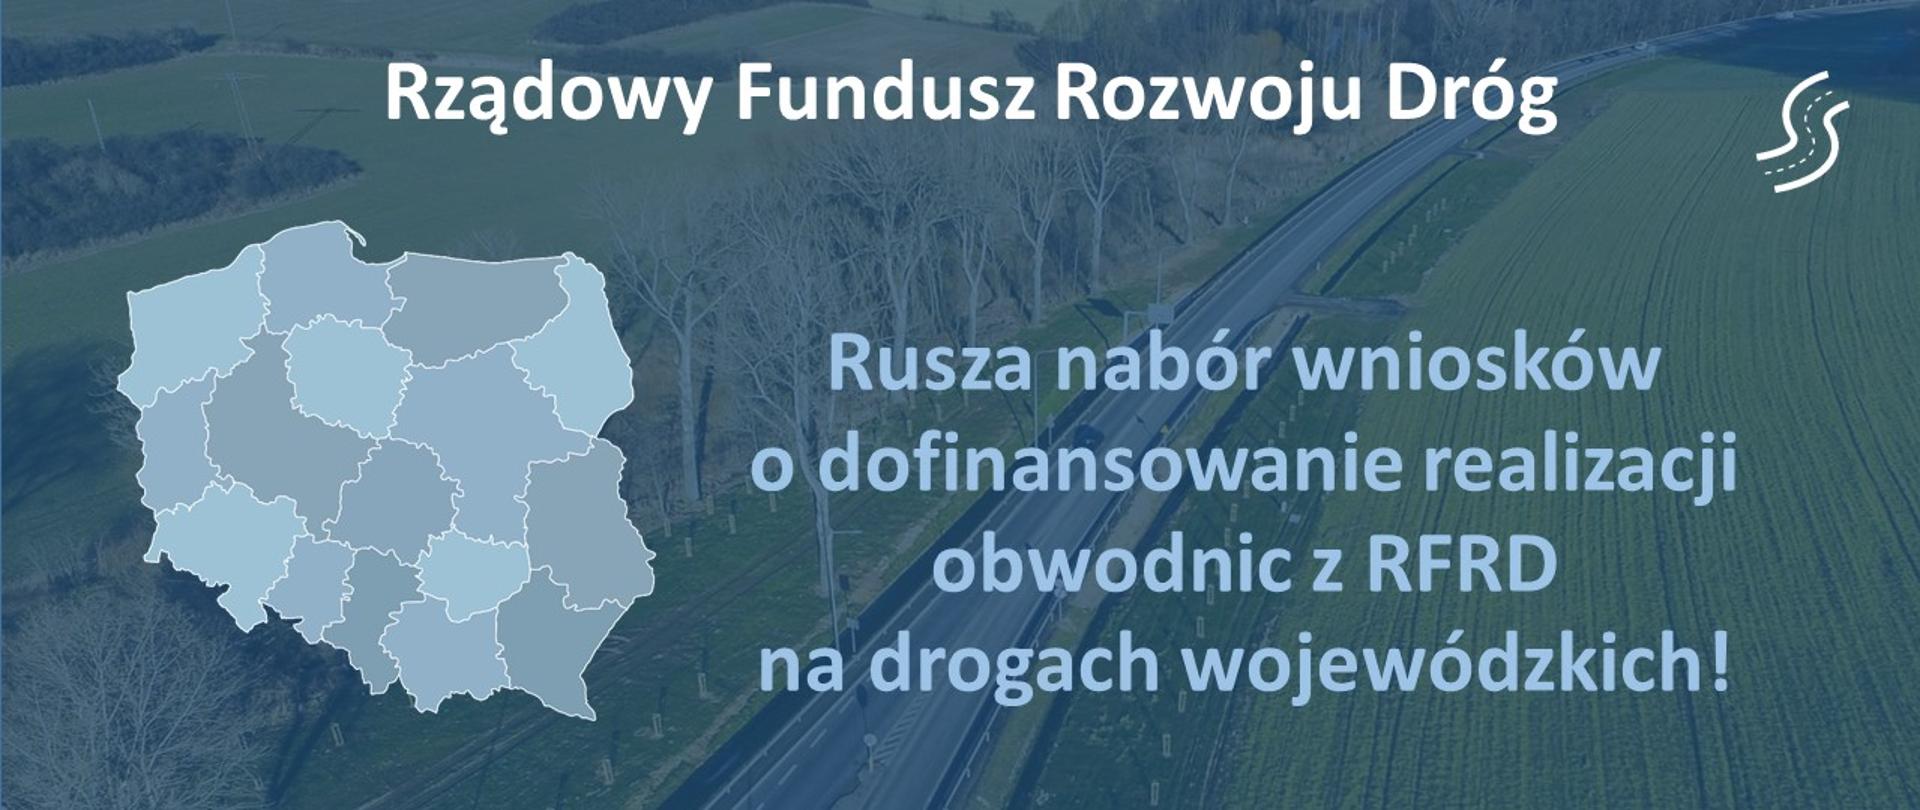 Rusza nabór wniosków o dofinansowanie realizacji obwodnic z RFRD na drogach wojewódzkich - infografika